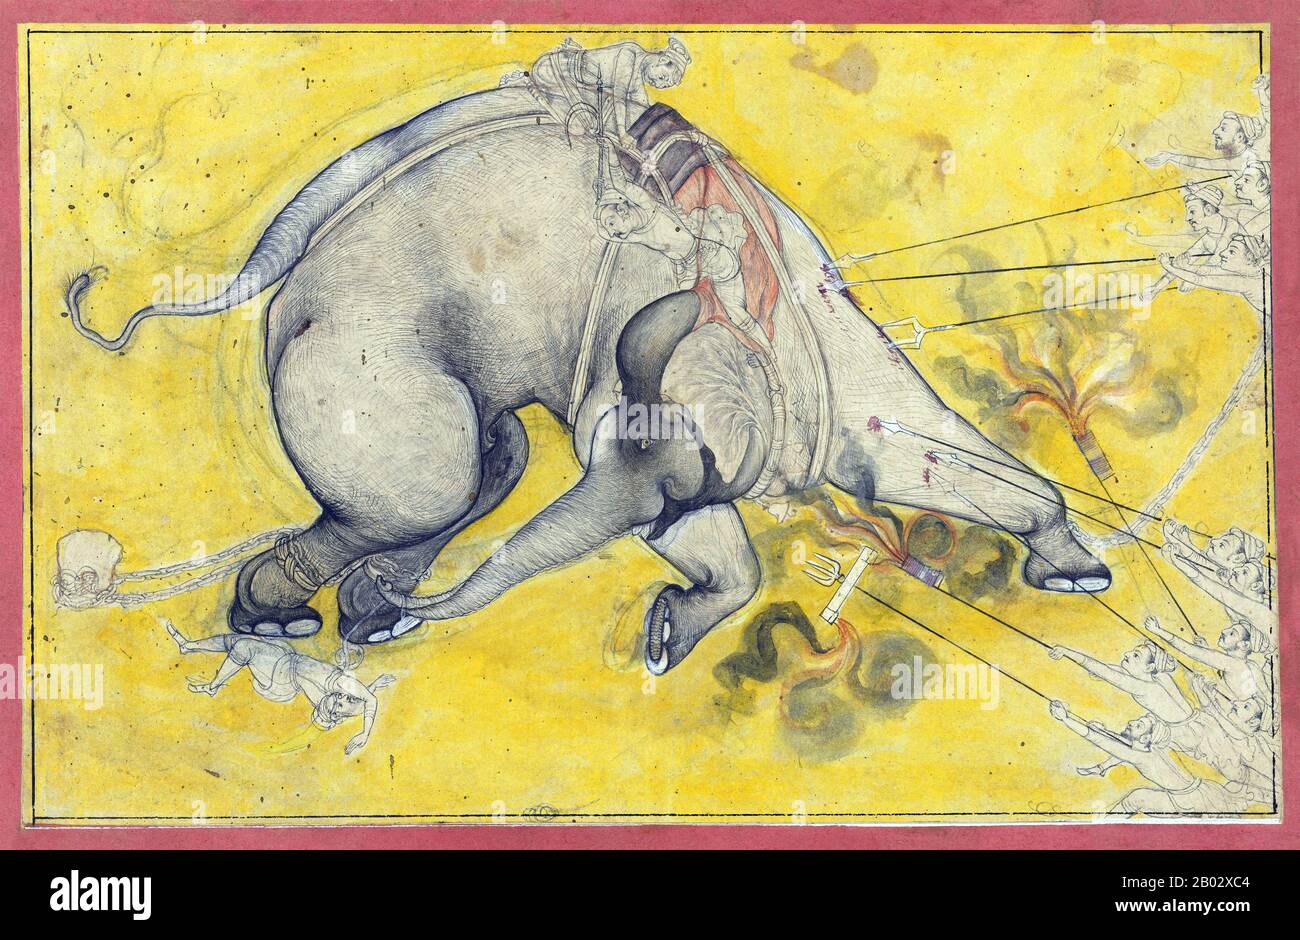 La pintura Rajput, también conocida como pintura Rajasthani, es un estilo  de pintura India que evolucionó y floreció en las cortes reales de  Rajputana. Cada reino Rajput evolucionó un estilo distinto, pero